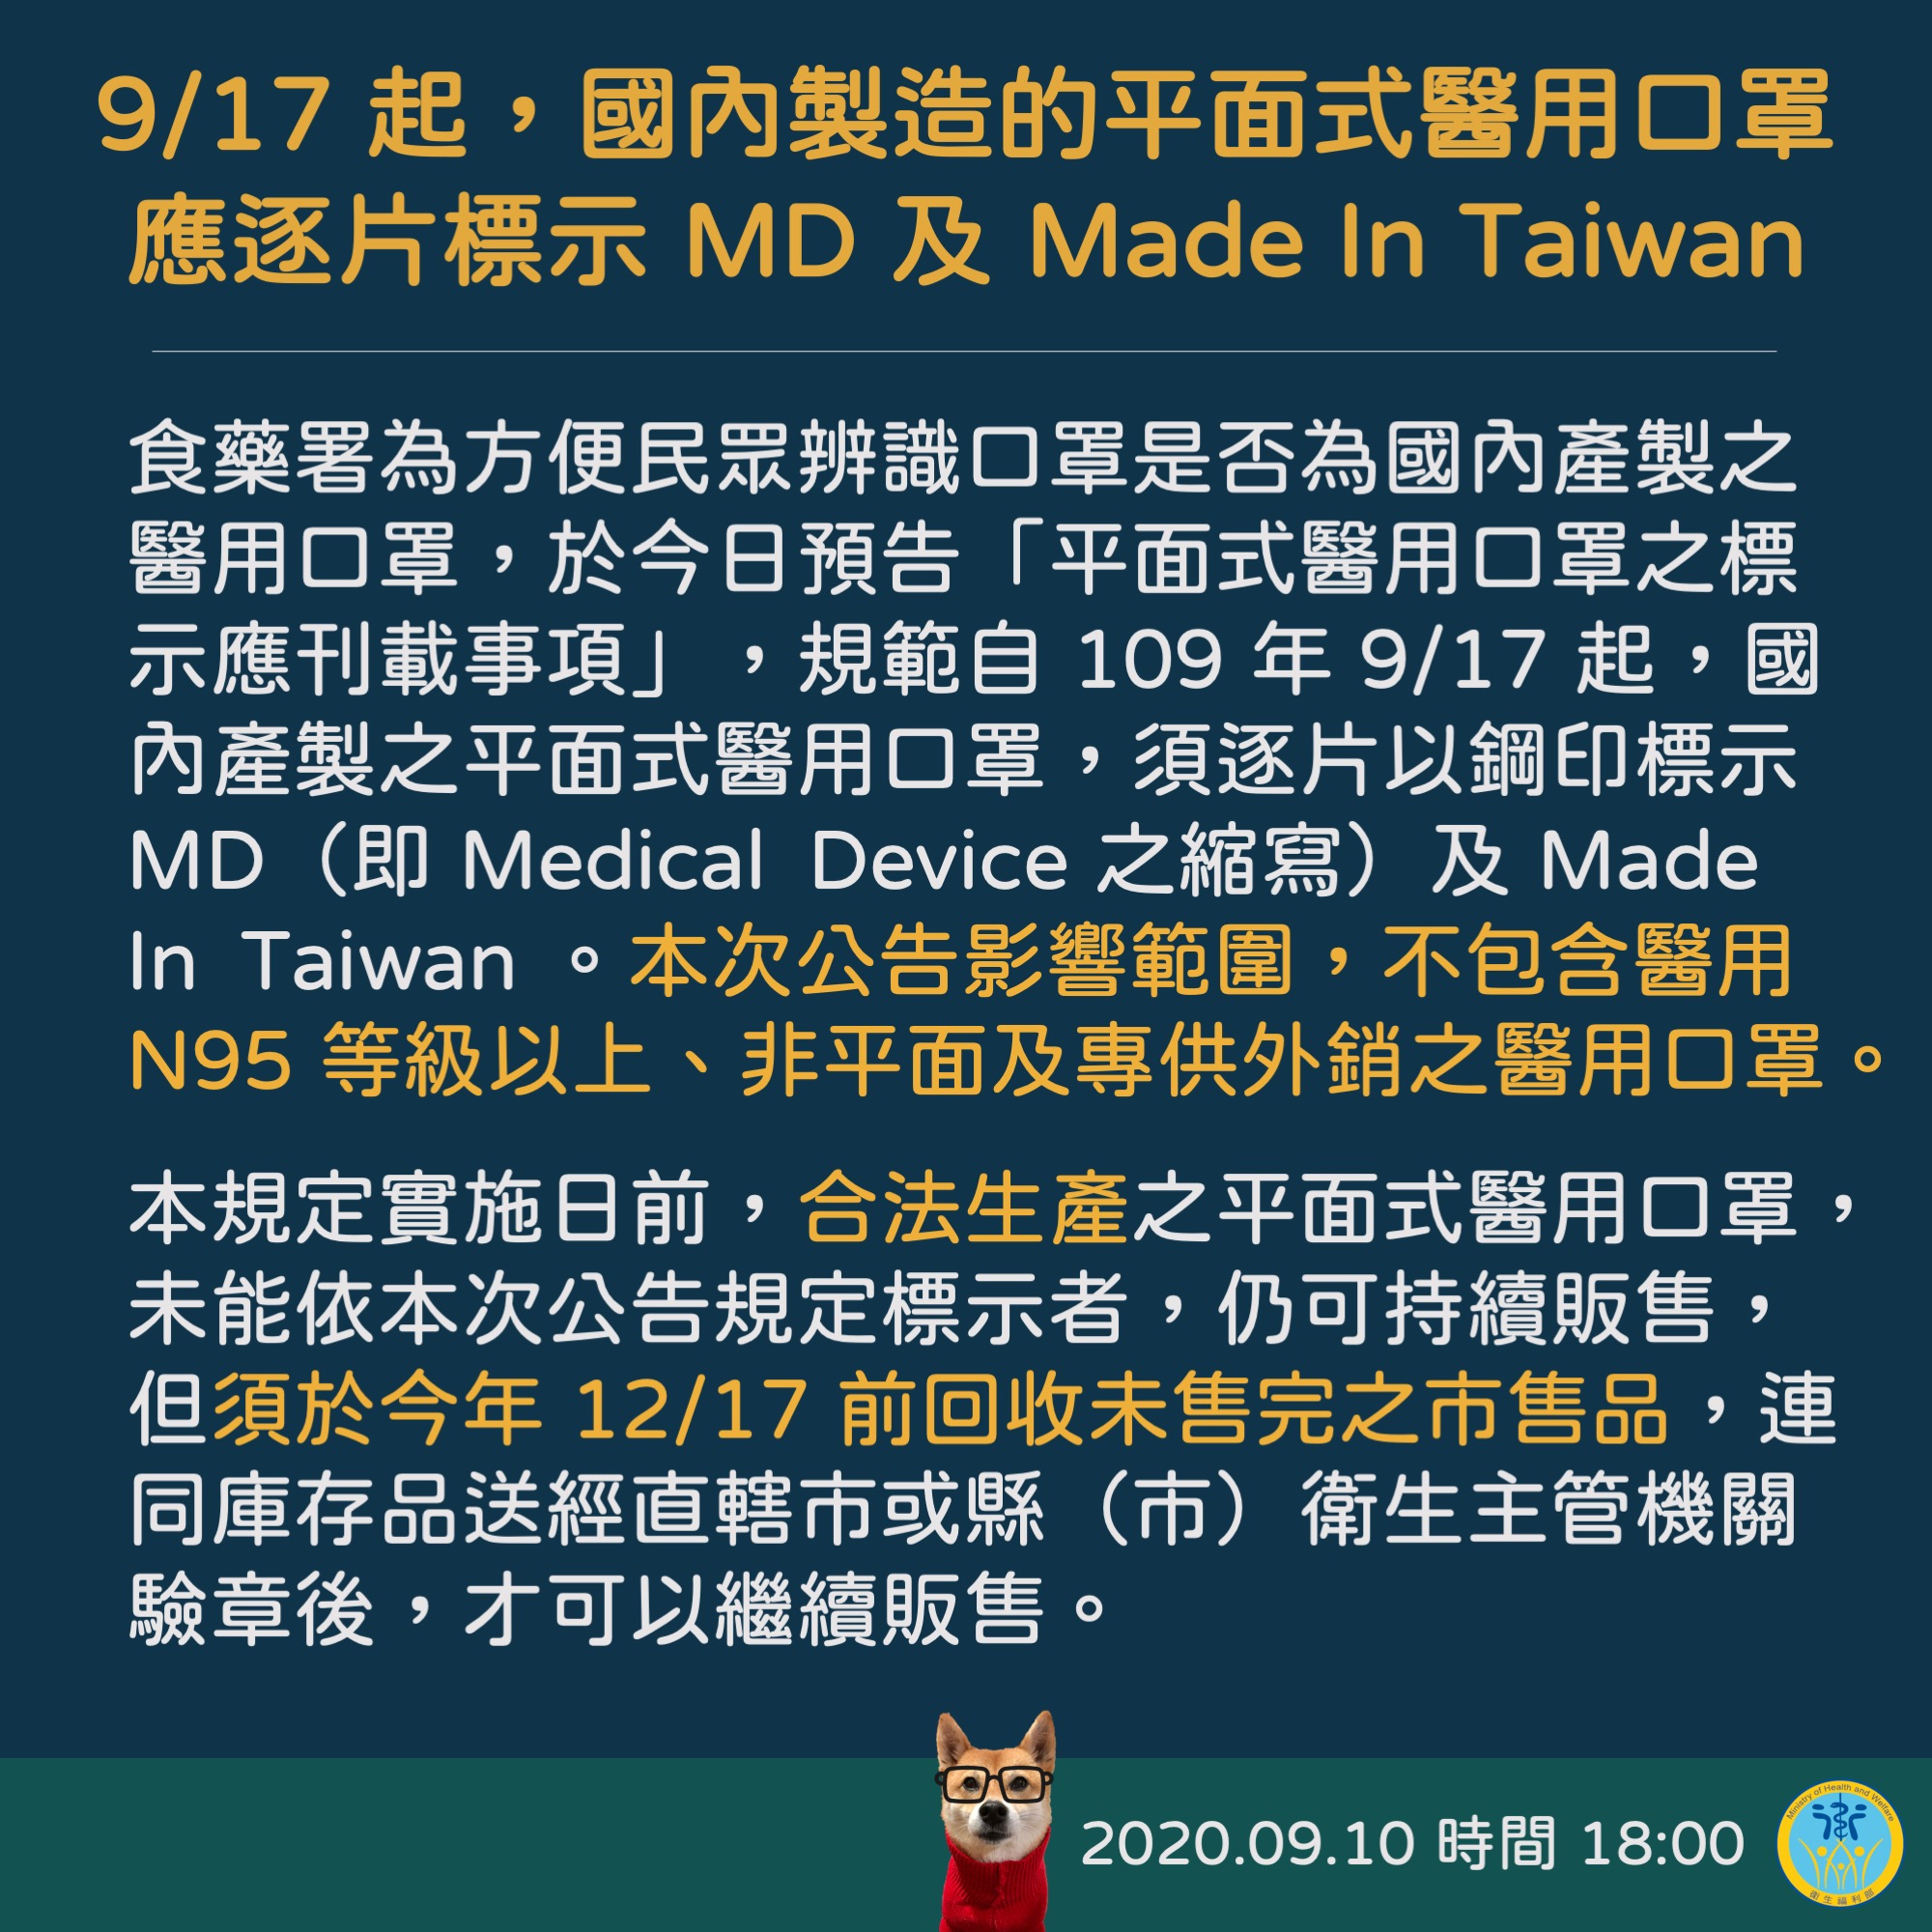 9月17 起國內製造之平面式醫用口罩應逐片標示「MD」及「Made In Taiwan」